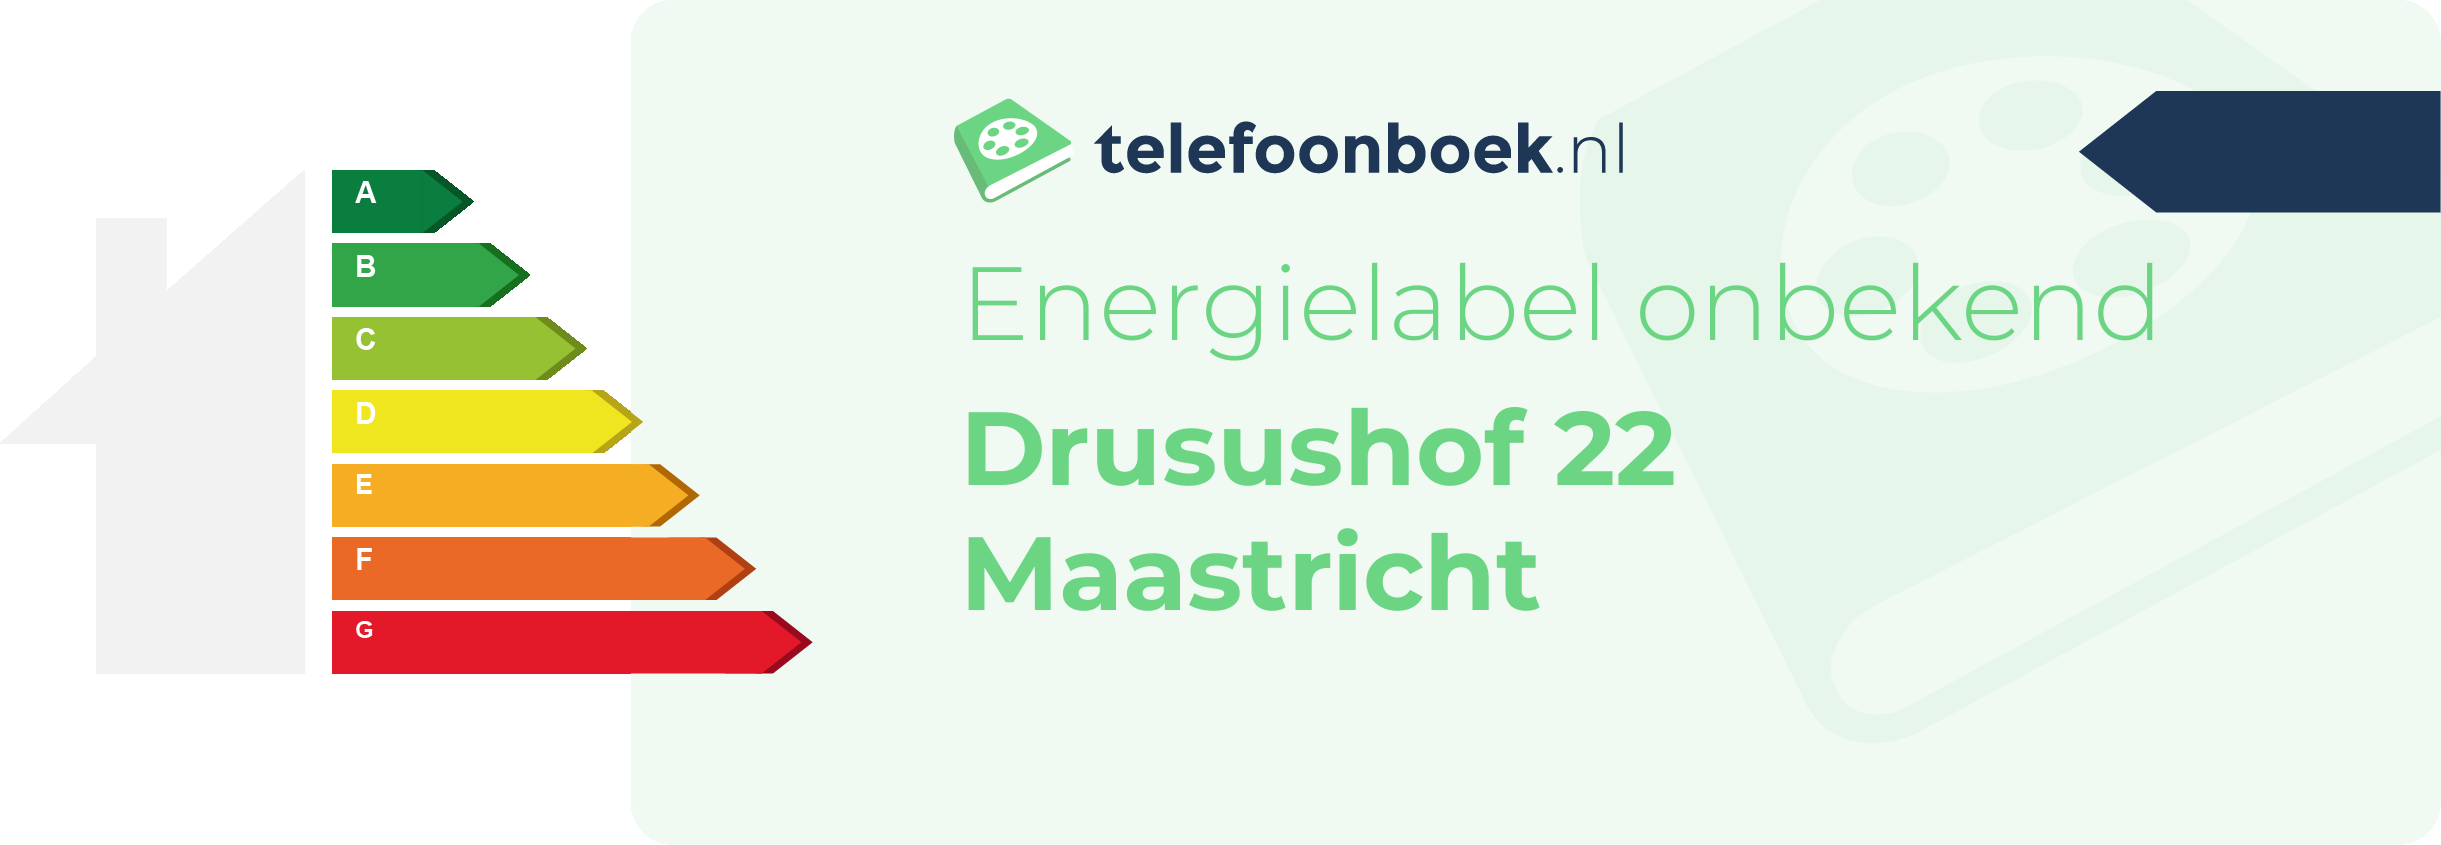 Energielabel Drusushof 22 Maastricht